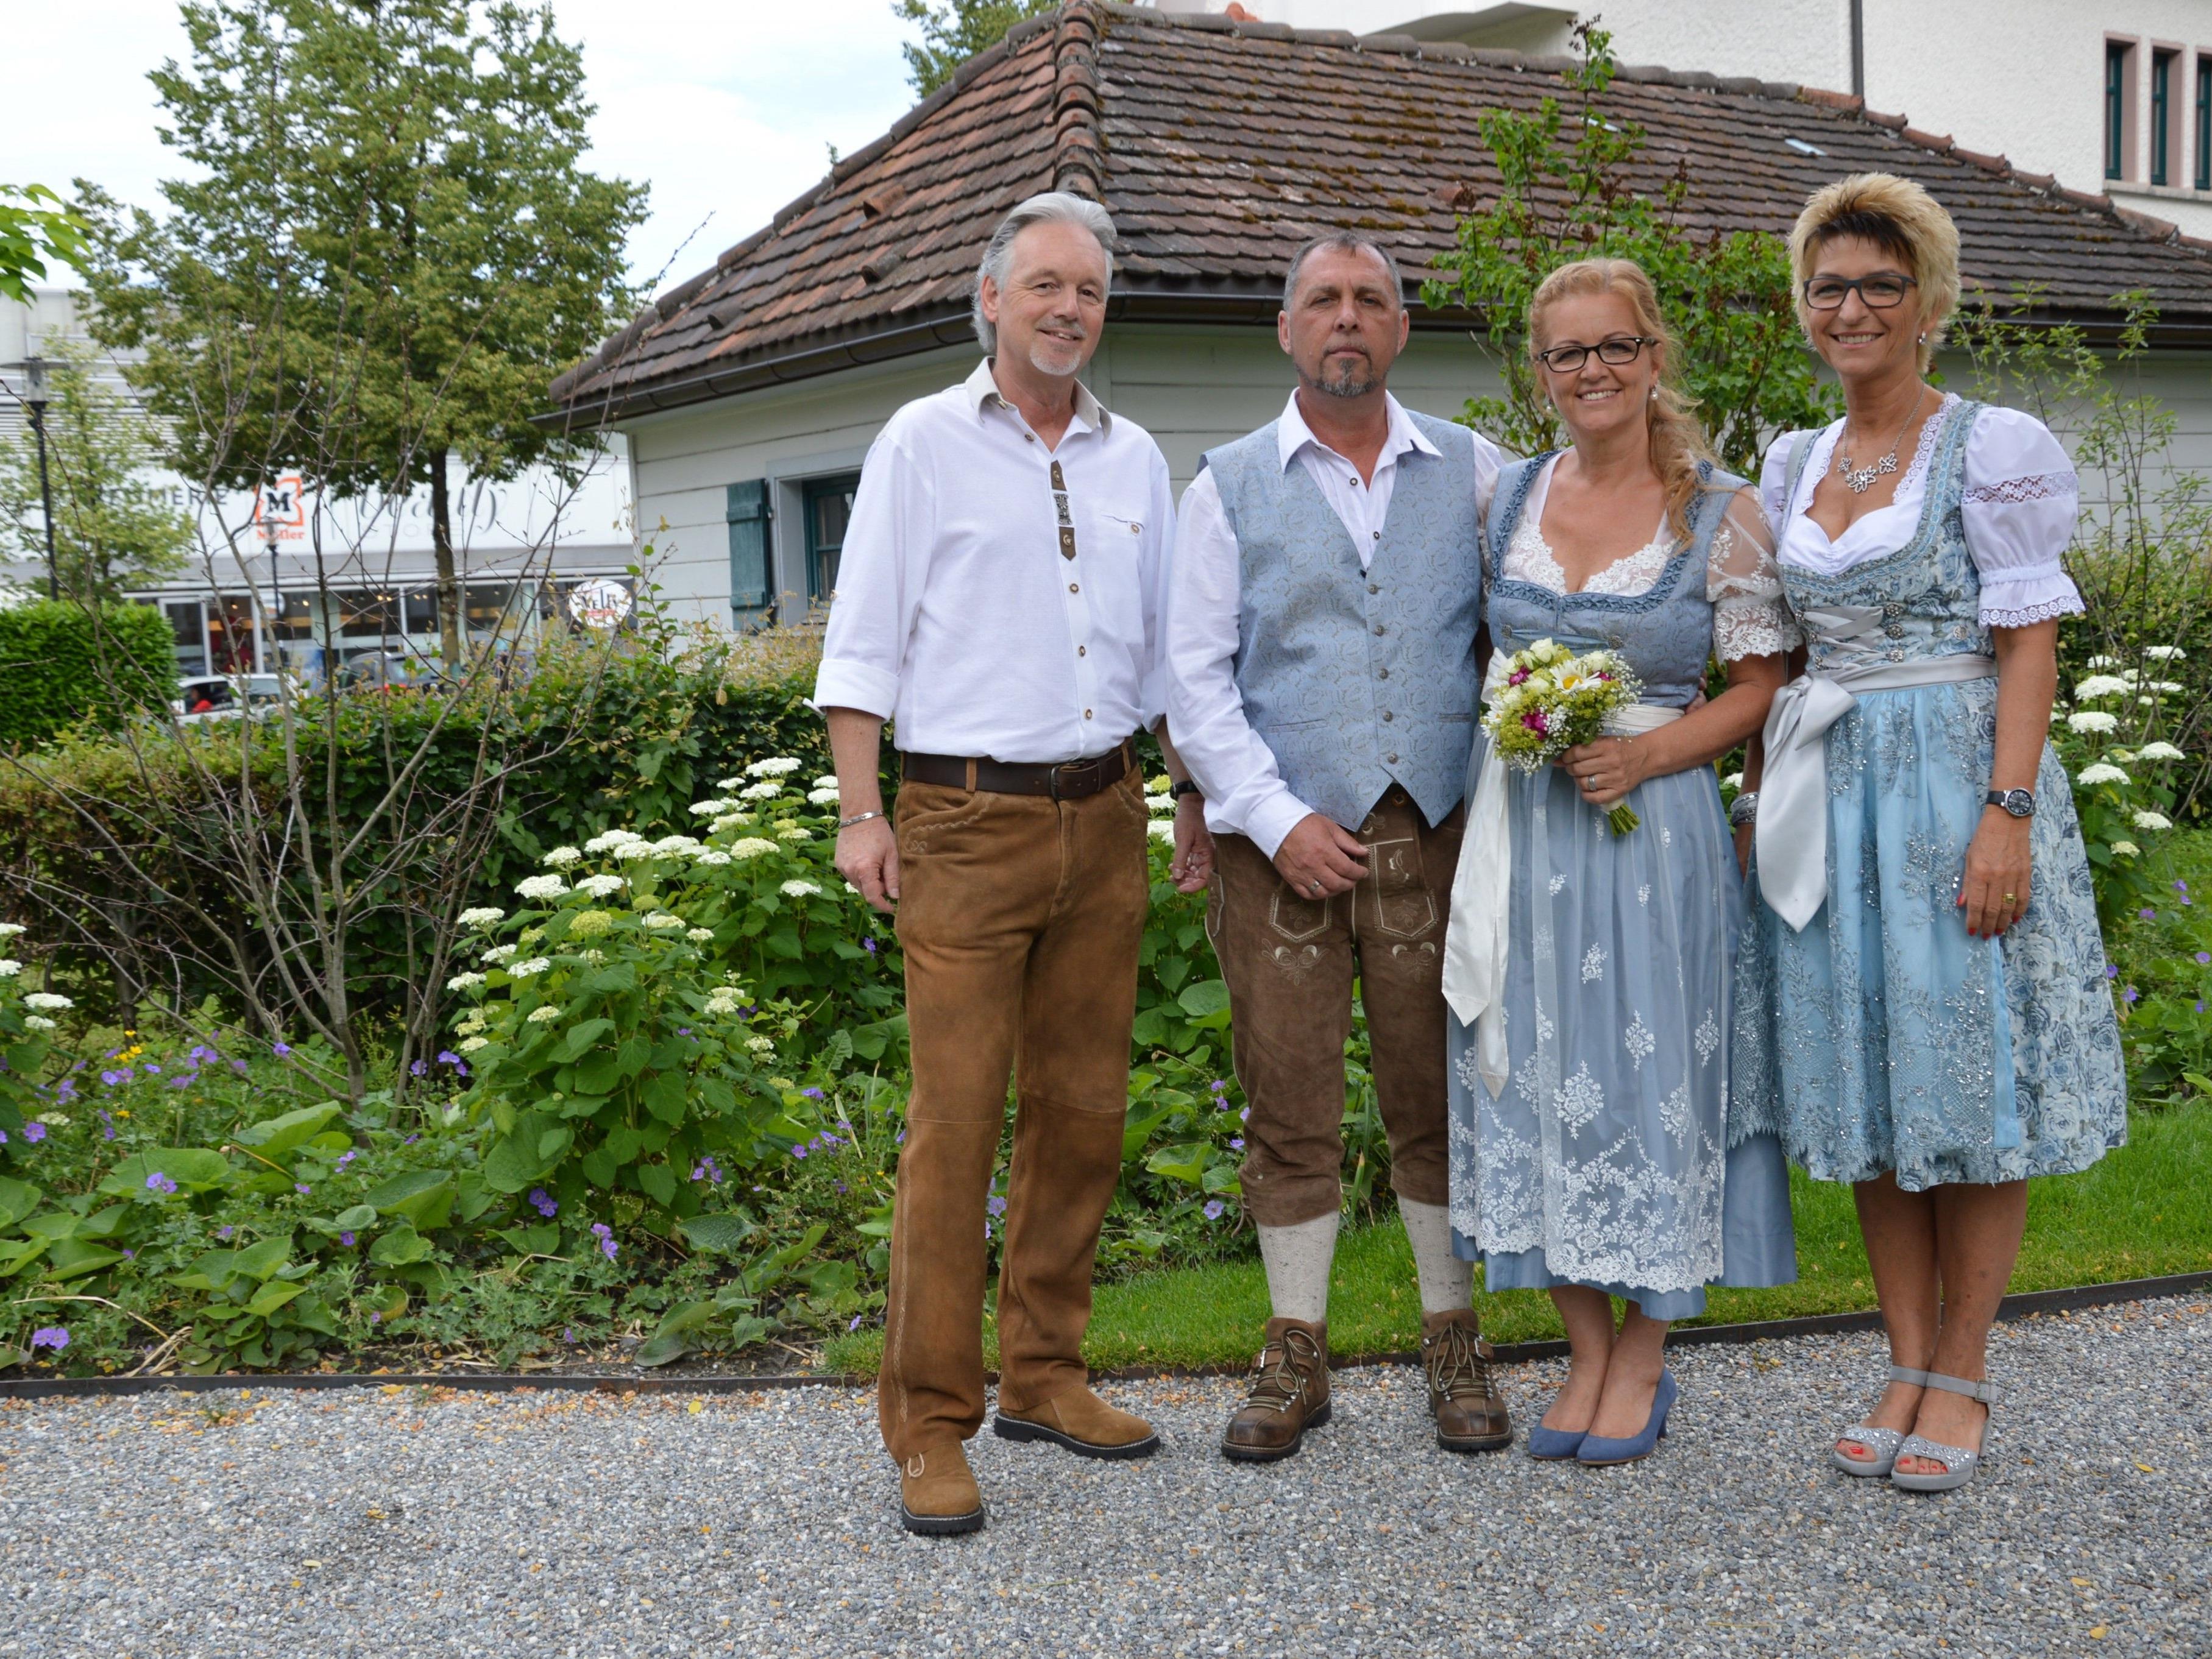 Andrea Grabher und Helmut Umbach feierten Hochzeit.